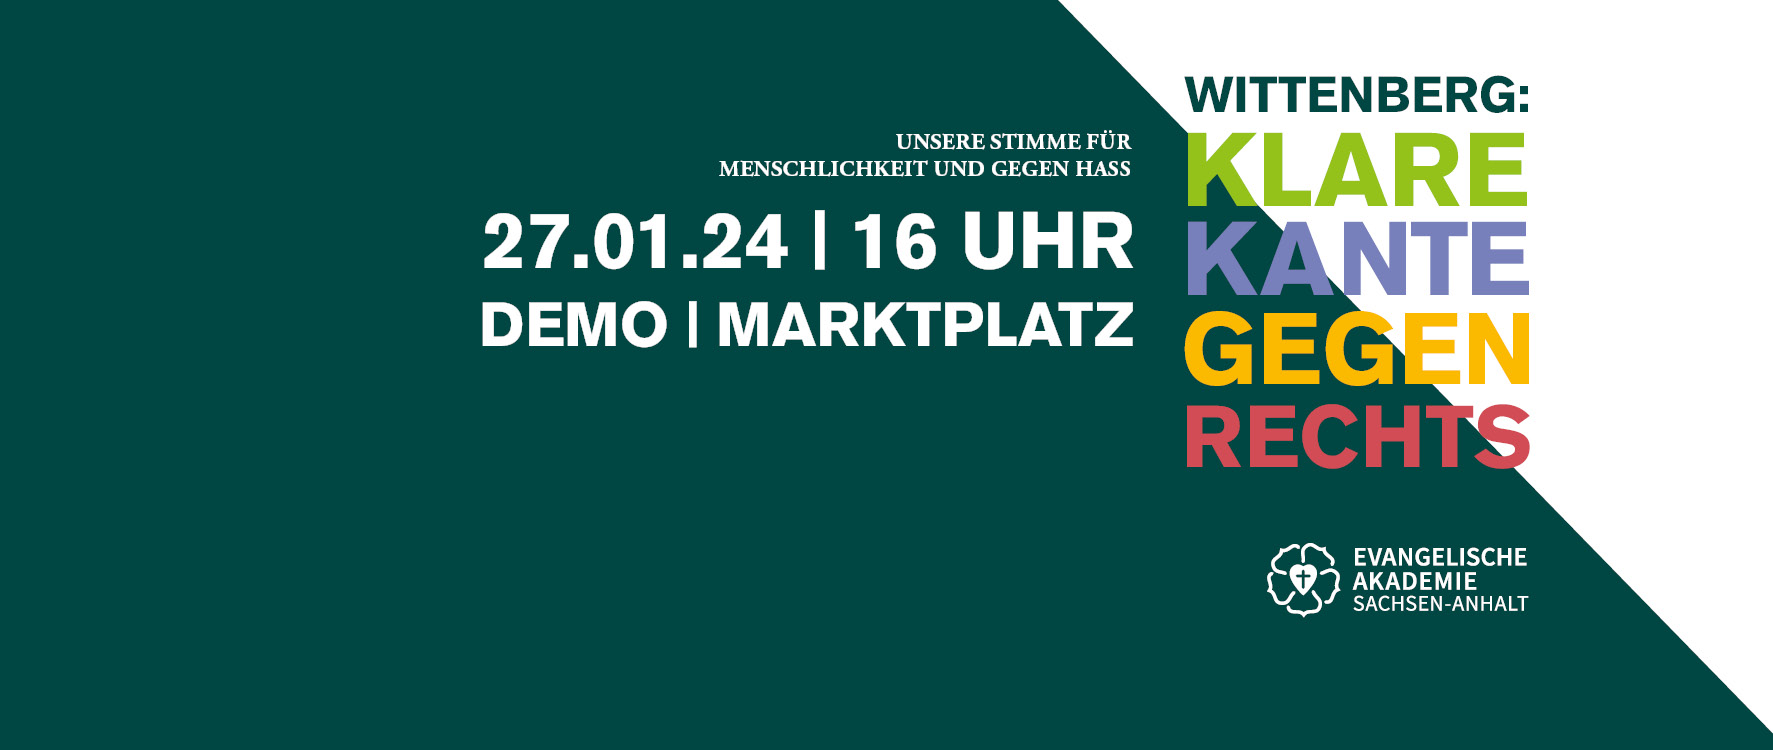 Wittenberg: Klare Kante gegen rechts. Unsere Stimme für Menschlichkeit und gegen Hass: 27.1.24, 16 Uhr, Demo, Mark